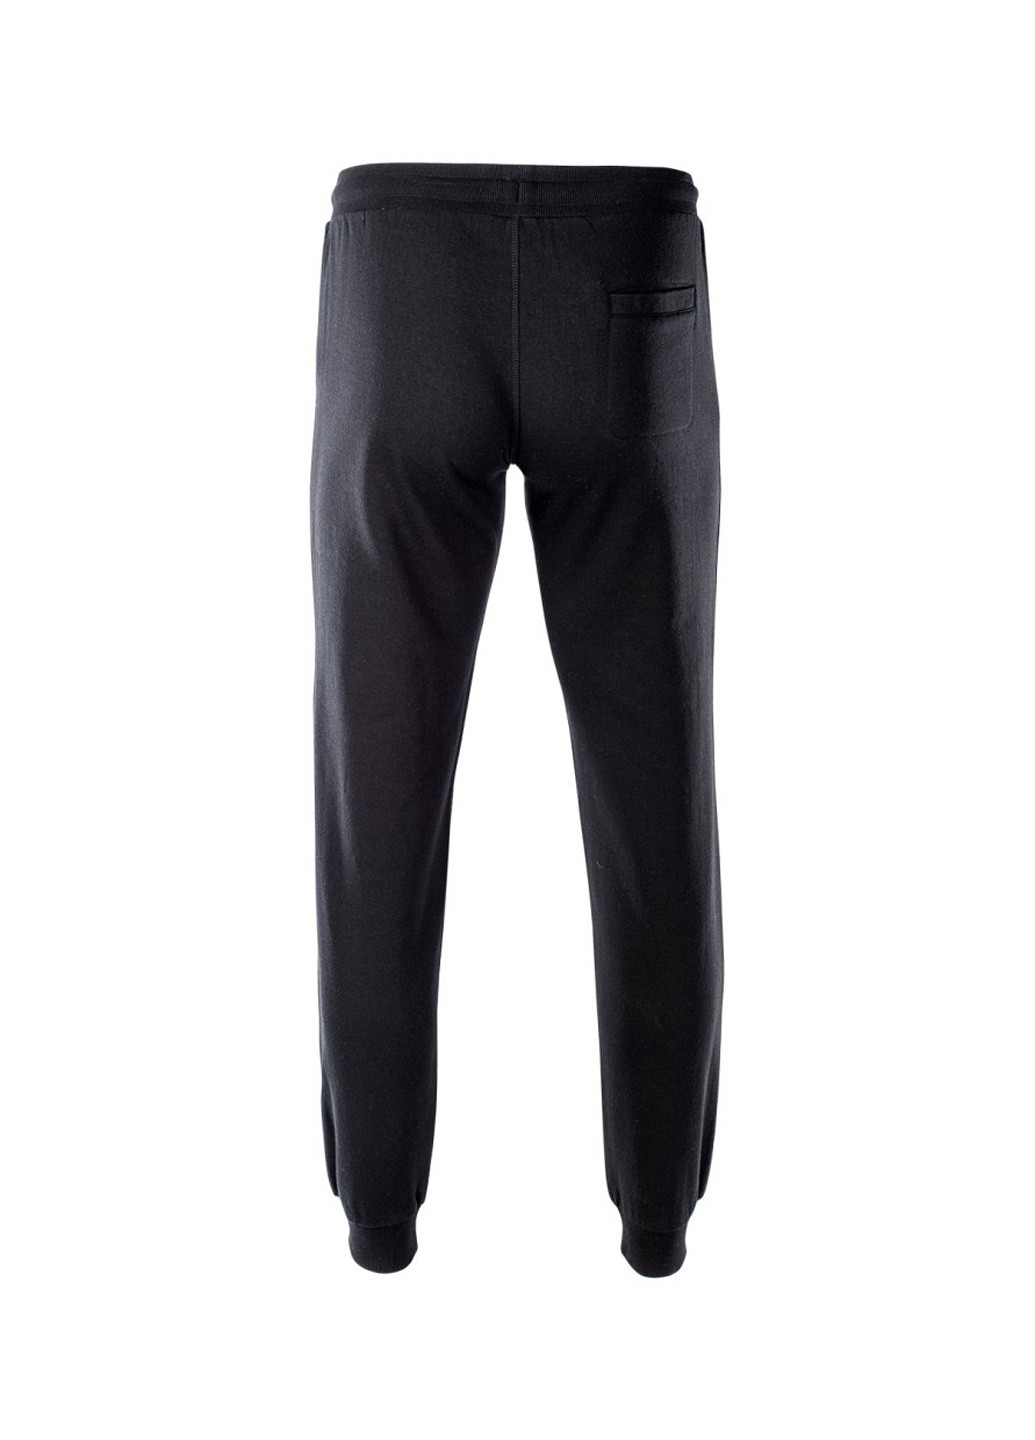 Черные спортивные демисезонные джоггеры брюки Hi-Tec